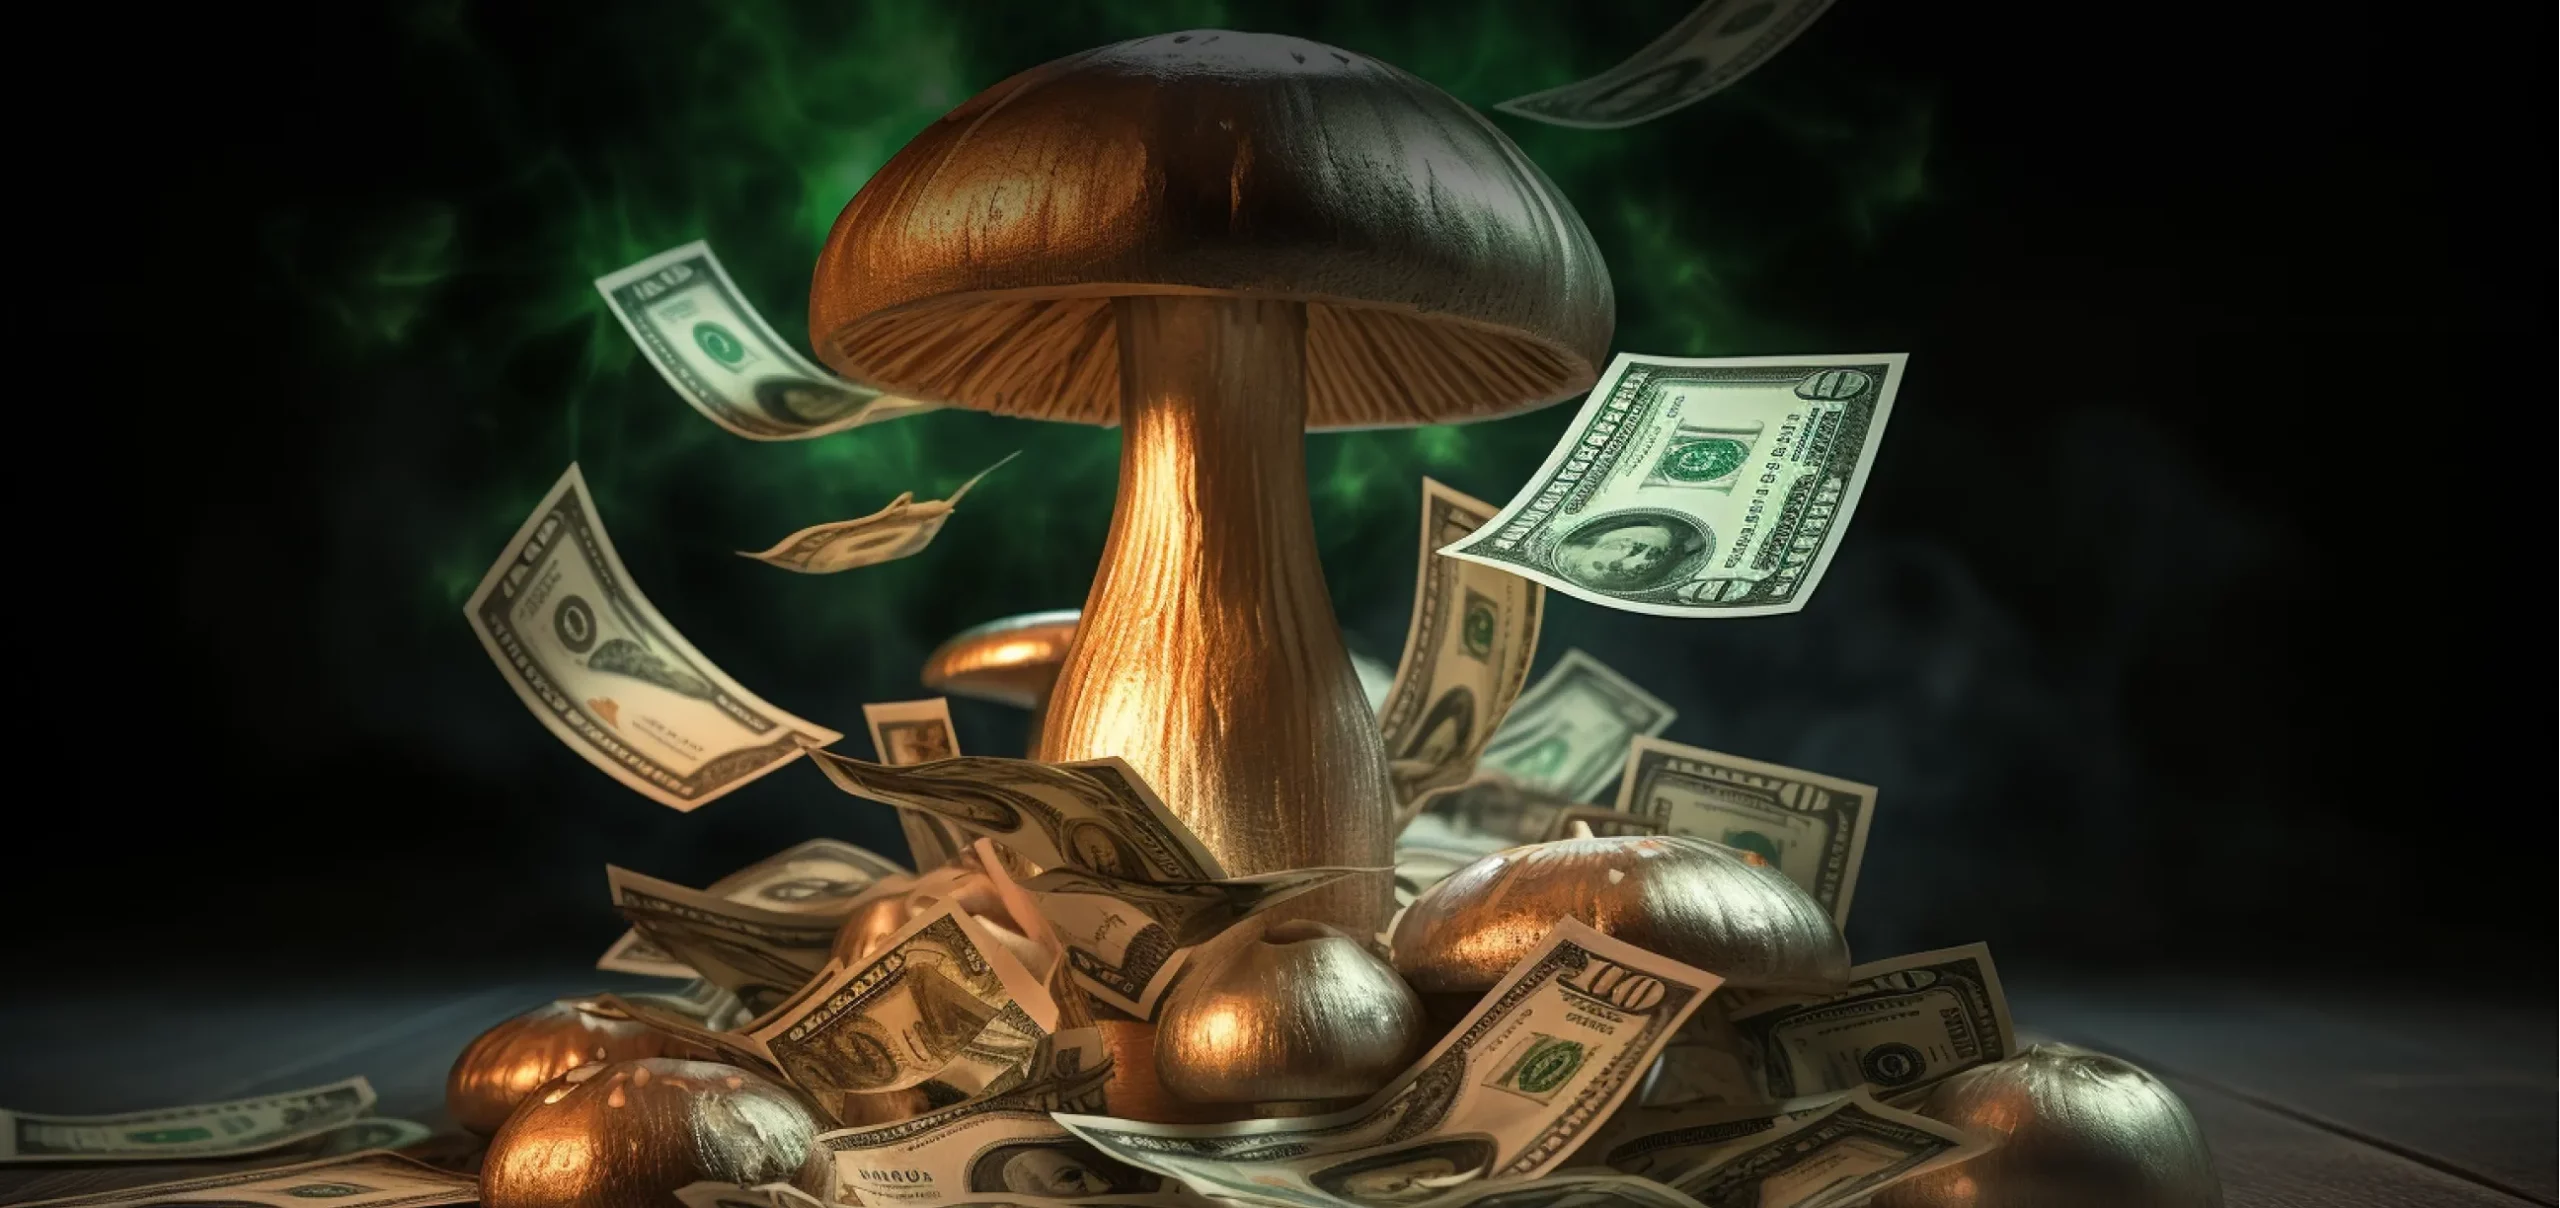 Mushroom and Money